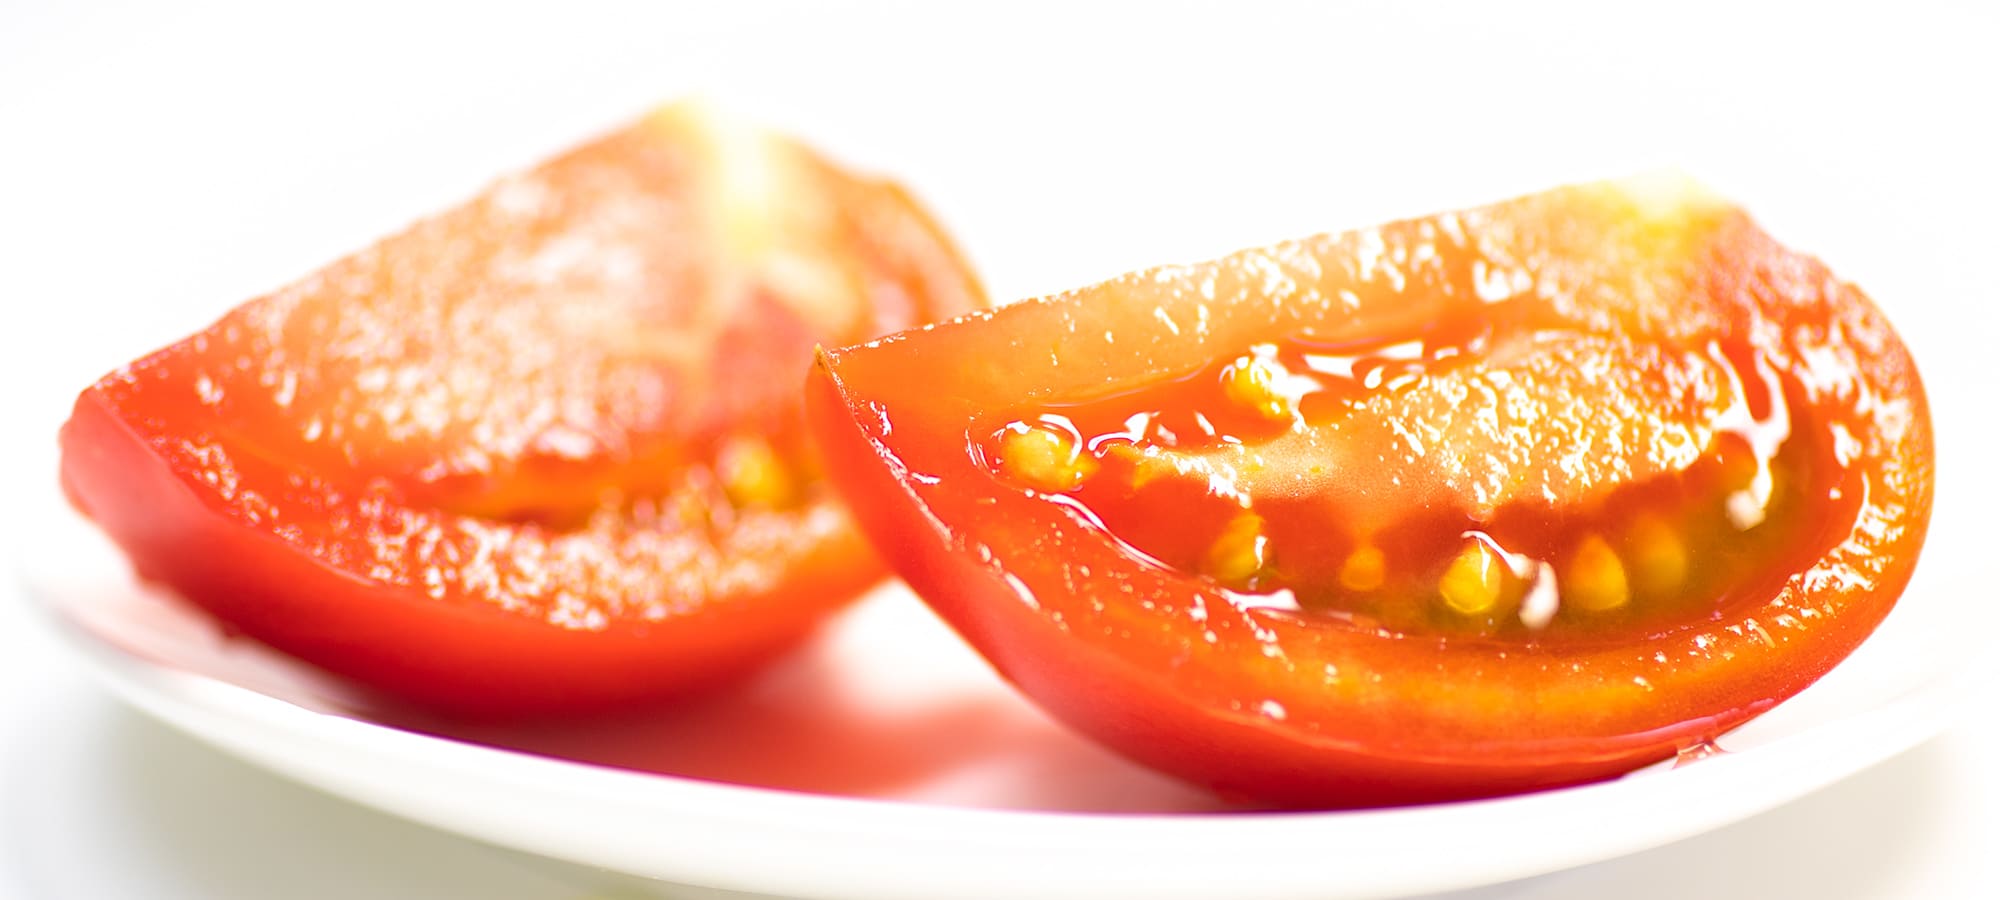 くし切りにした瑞々しいトマトの写真